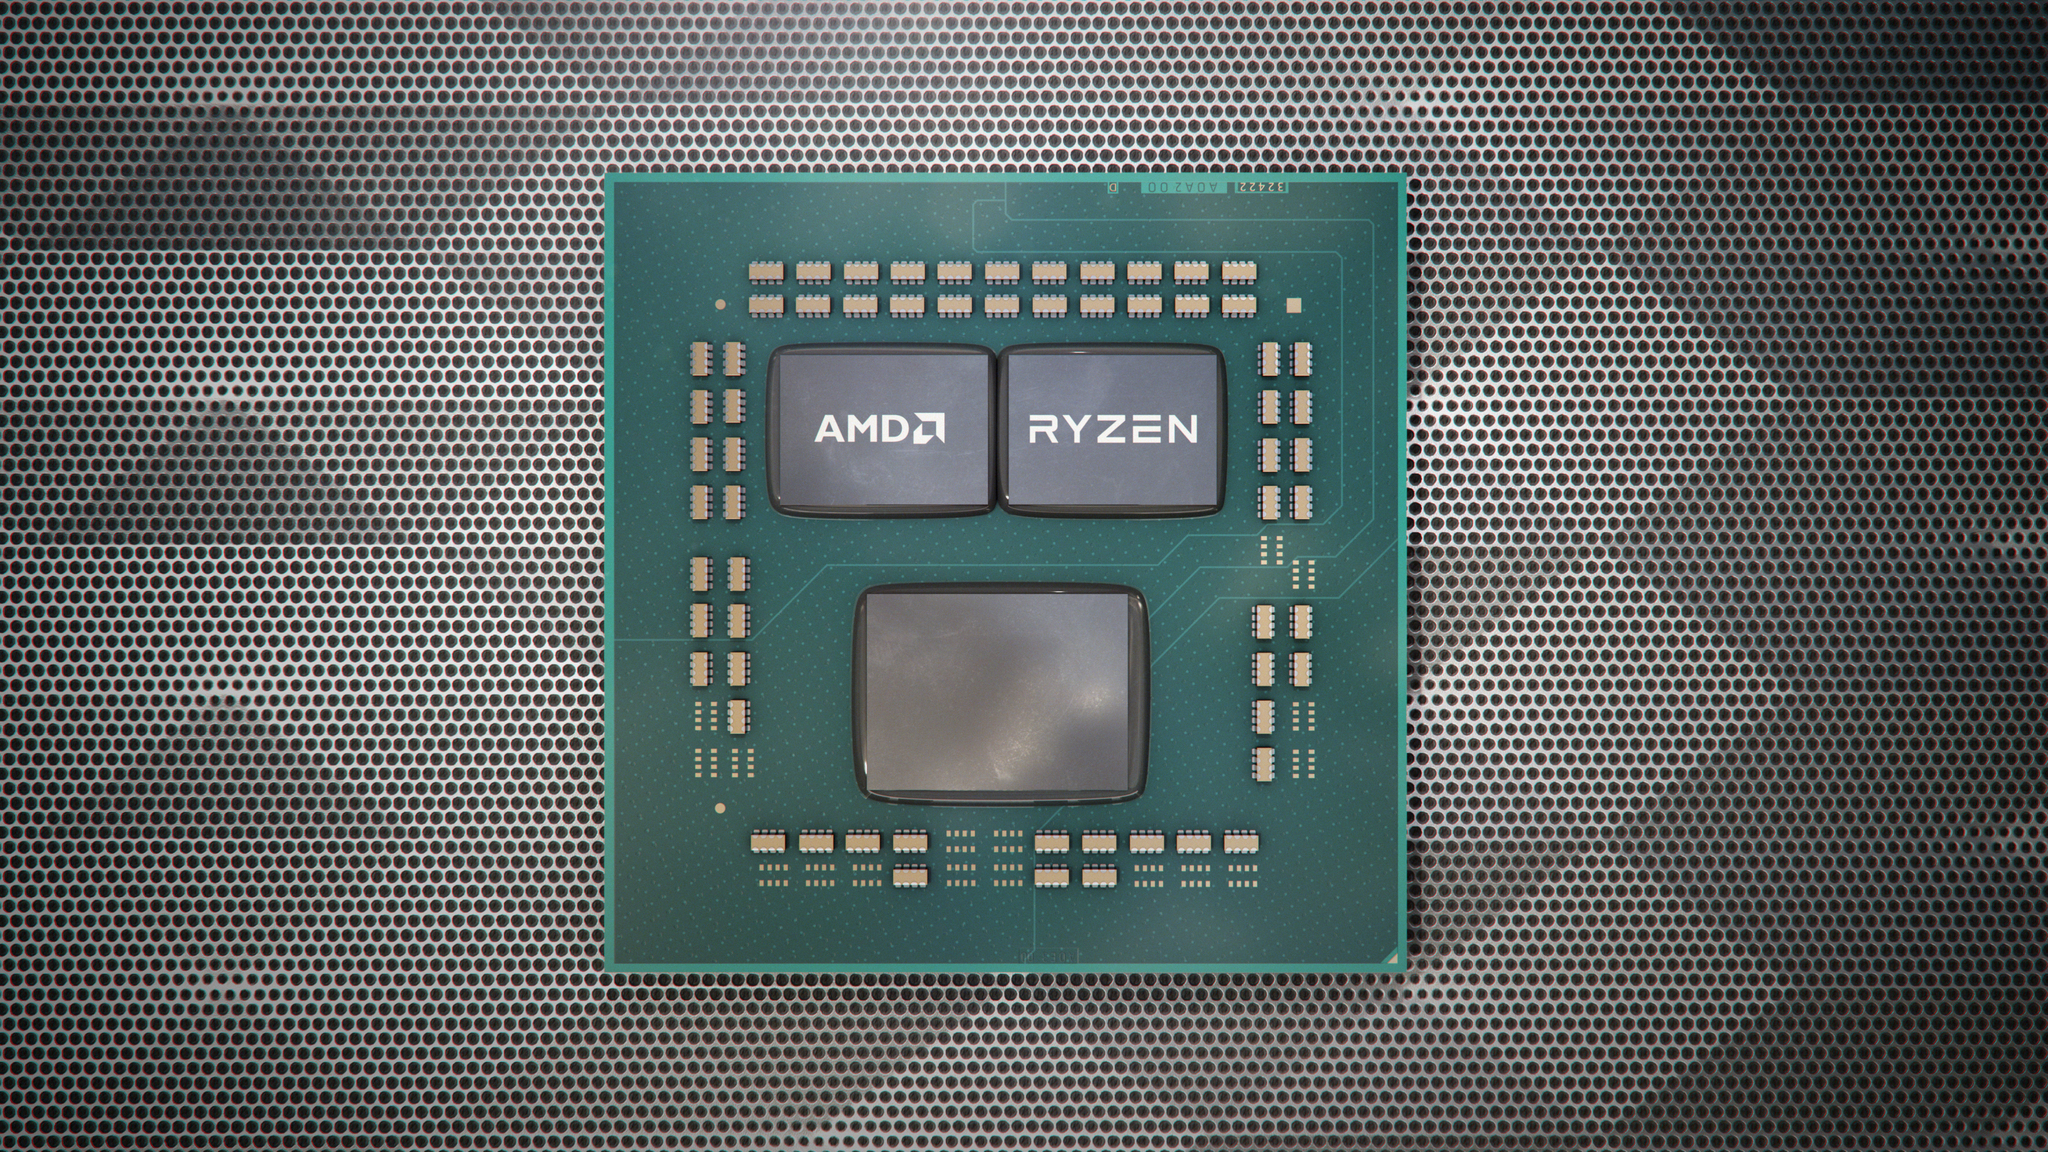 Тестируем процессоры AMD Ryzen 7 3700X и Ryzen 9 3900X: новая  микроархитектура Zen2 и уже 12 ядер на знакомой платформе AM4